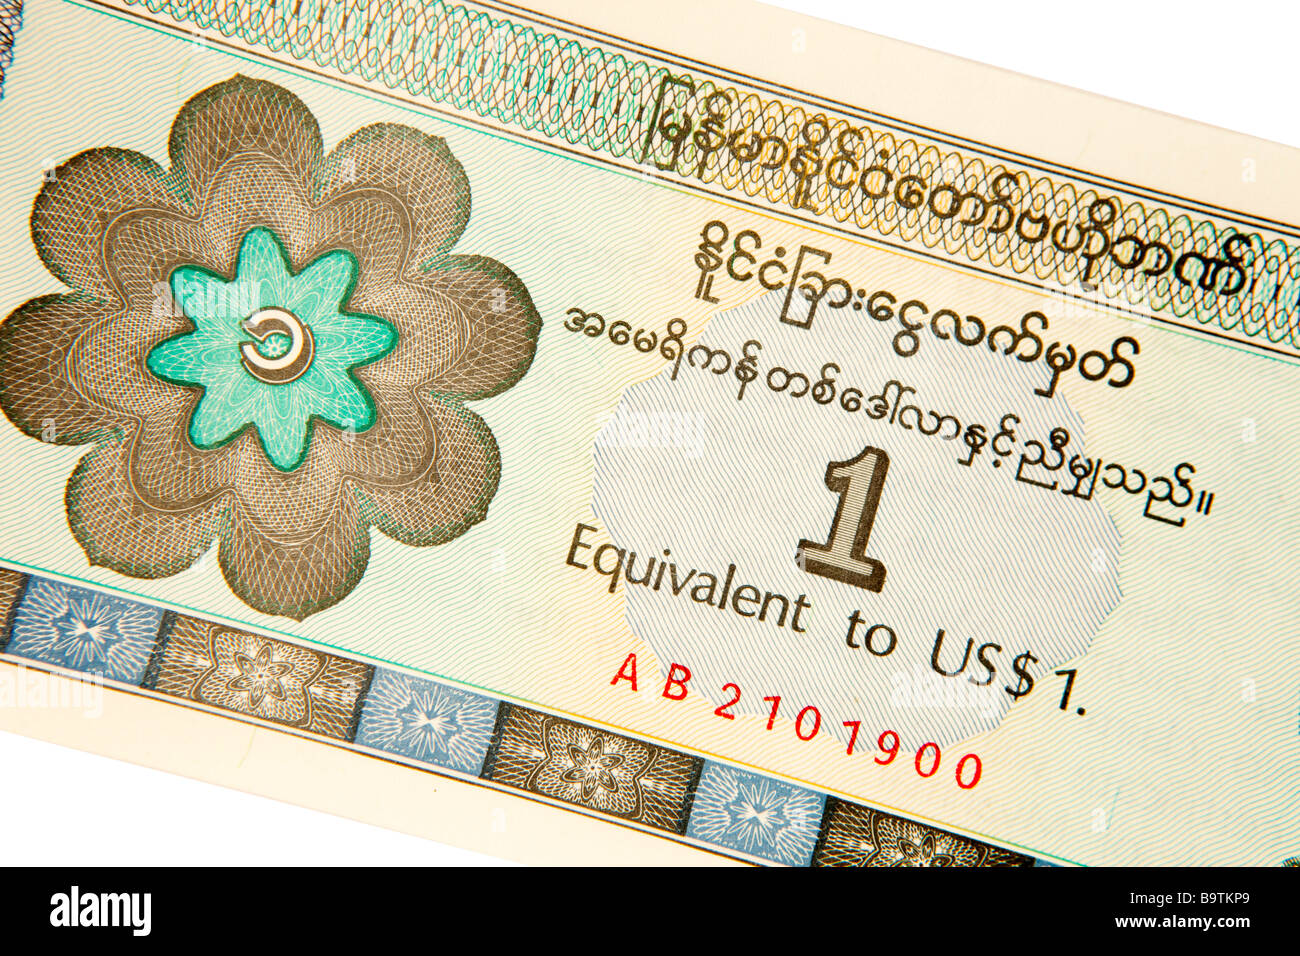 dollar to myanmar